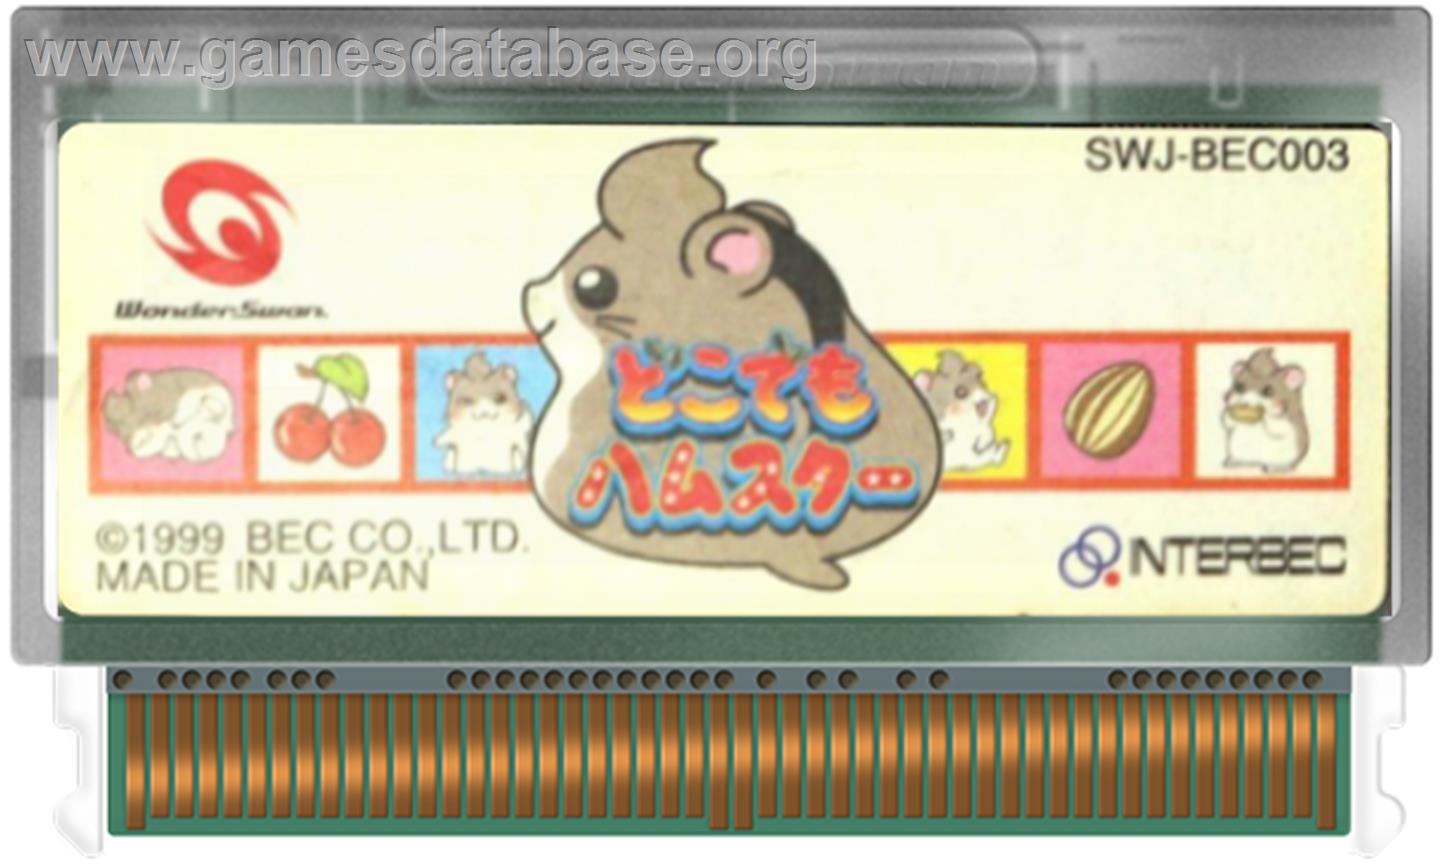 Dokodemo Hamster - Bandai WonderSwan - Artwork - Cartridge